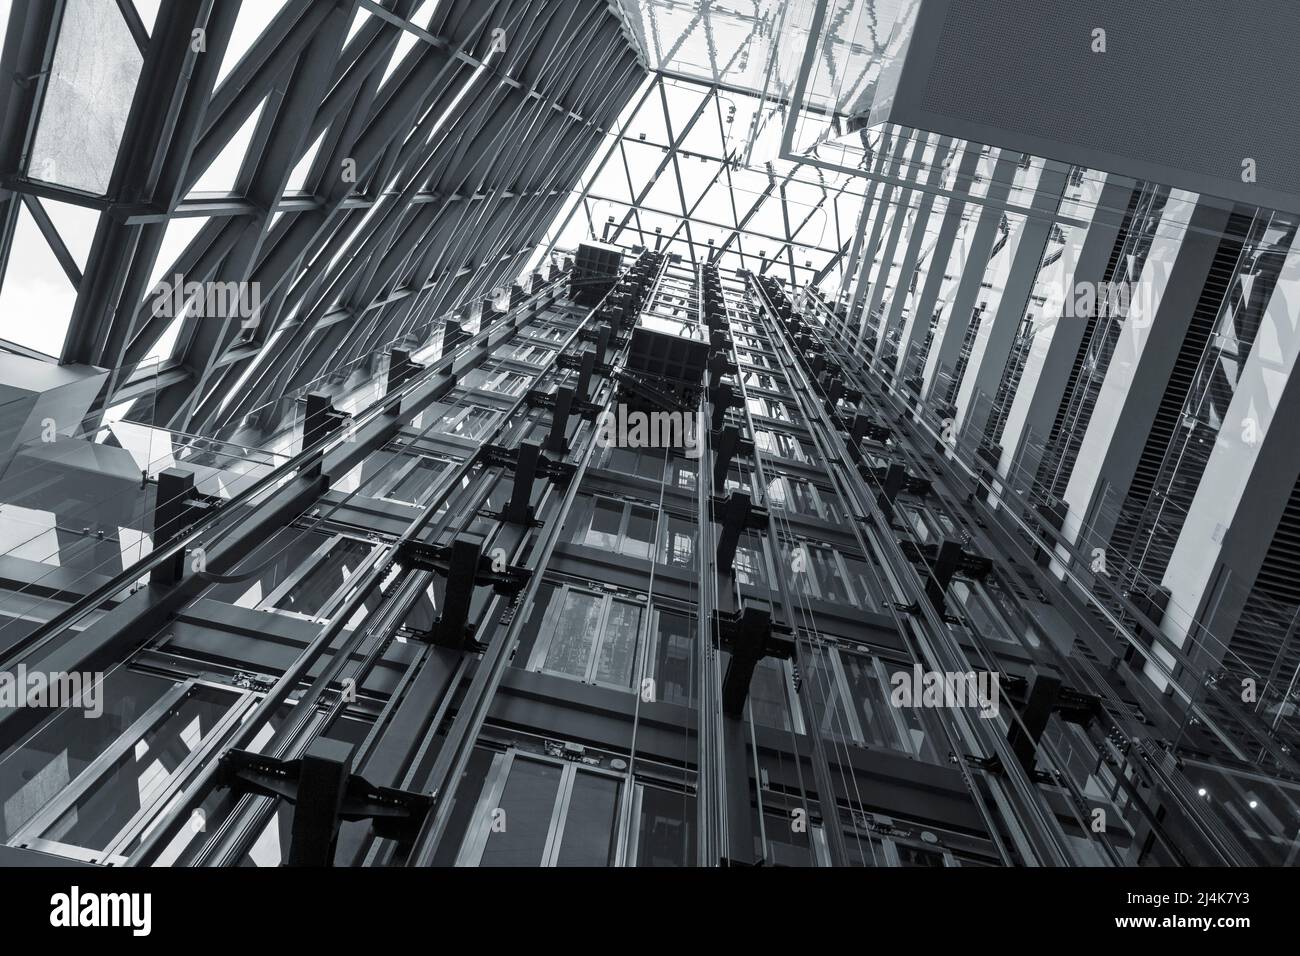 Arrière-plan moderne en acier et structure métallique abstraite, image noir et blanc à contraste élevé Banque D'Images